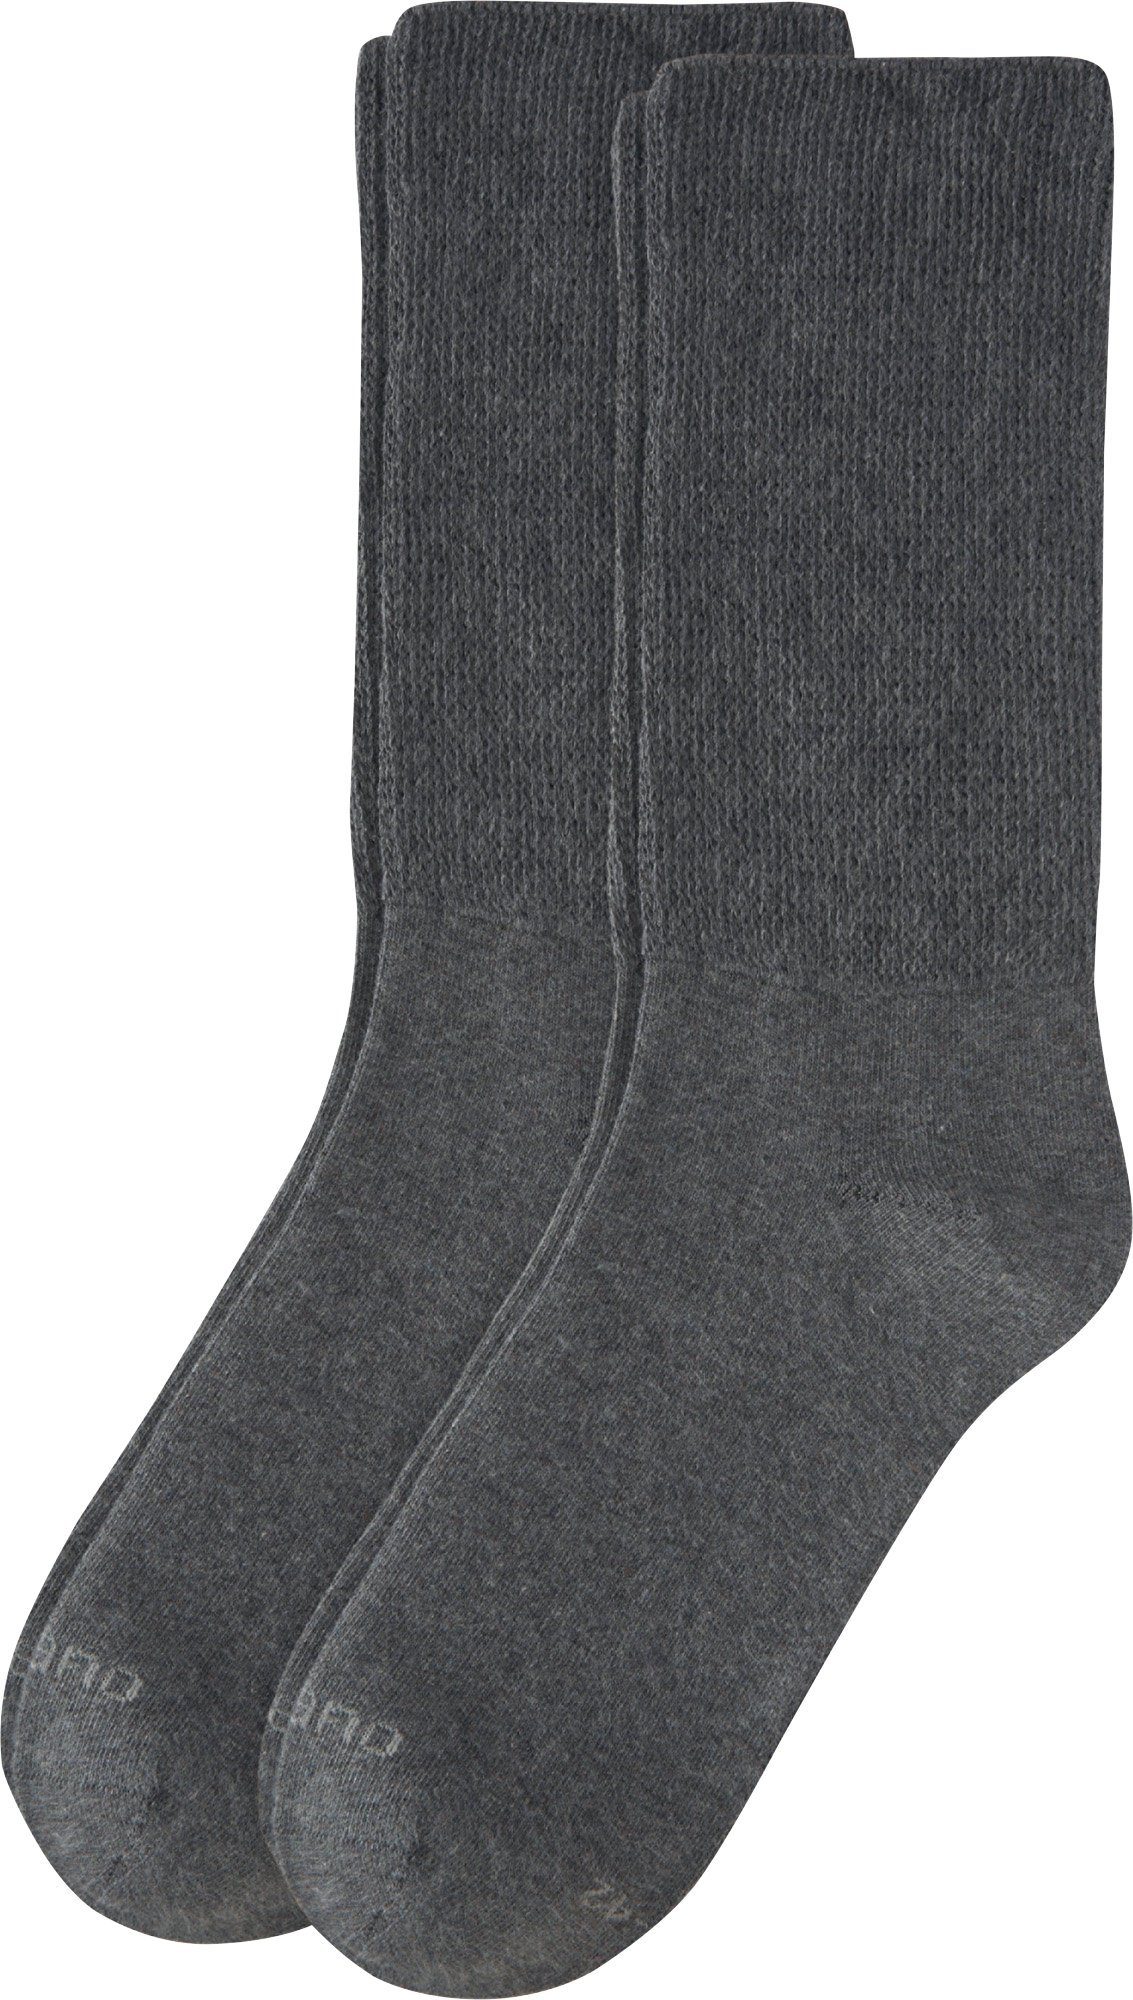 Camano Socken Uni, 23% 2% 75% Material: Baumwolle , Elasthan Softbund Unisex-Socken mit Polyamid , Paar 2